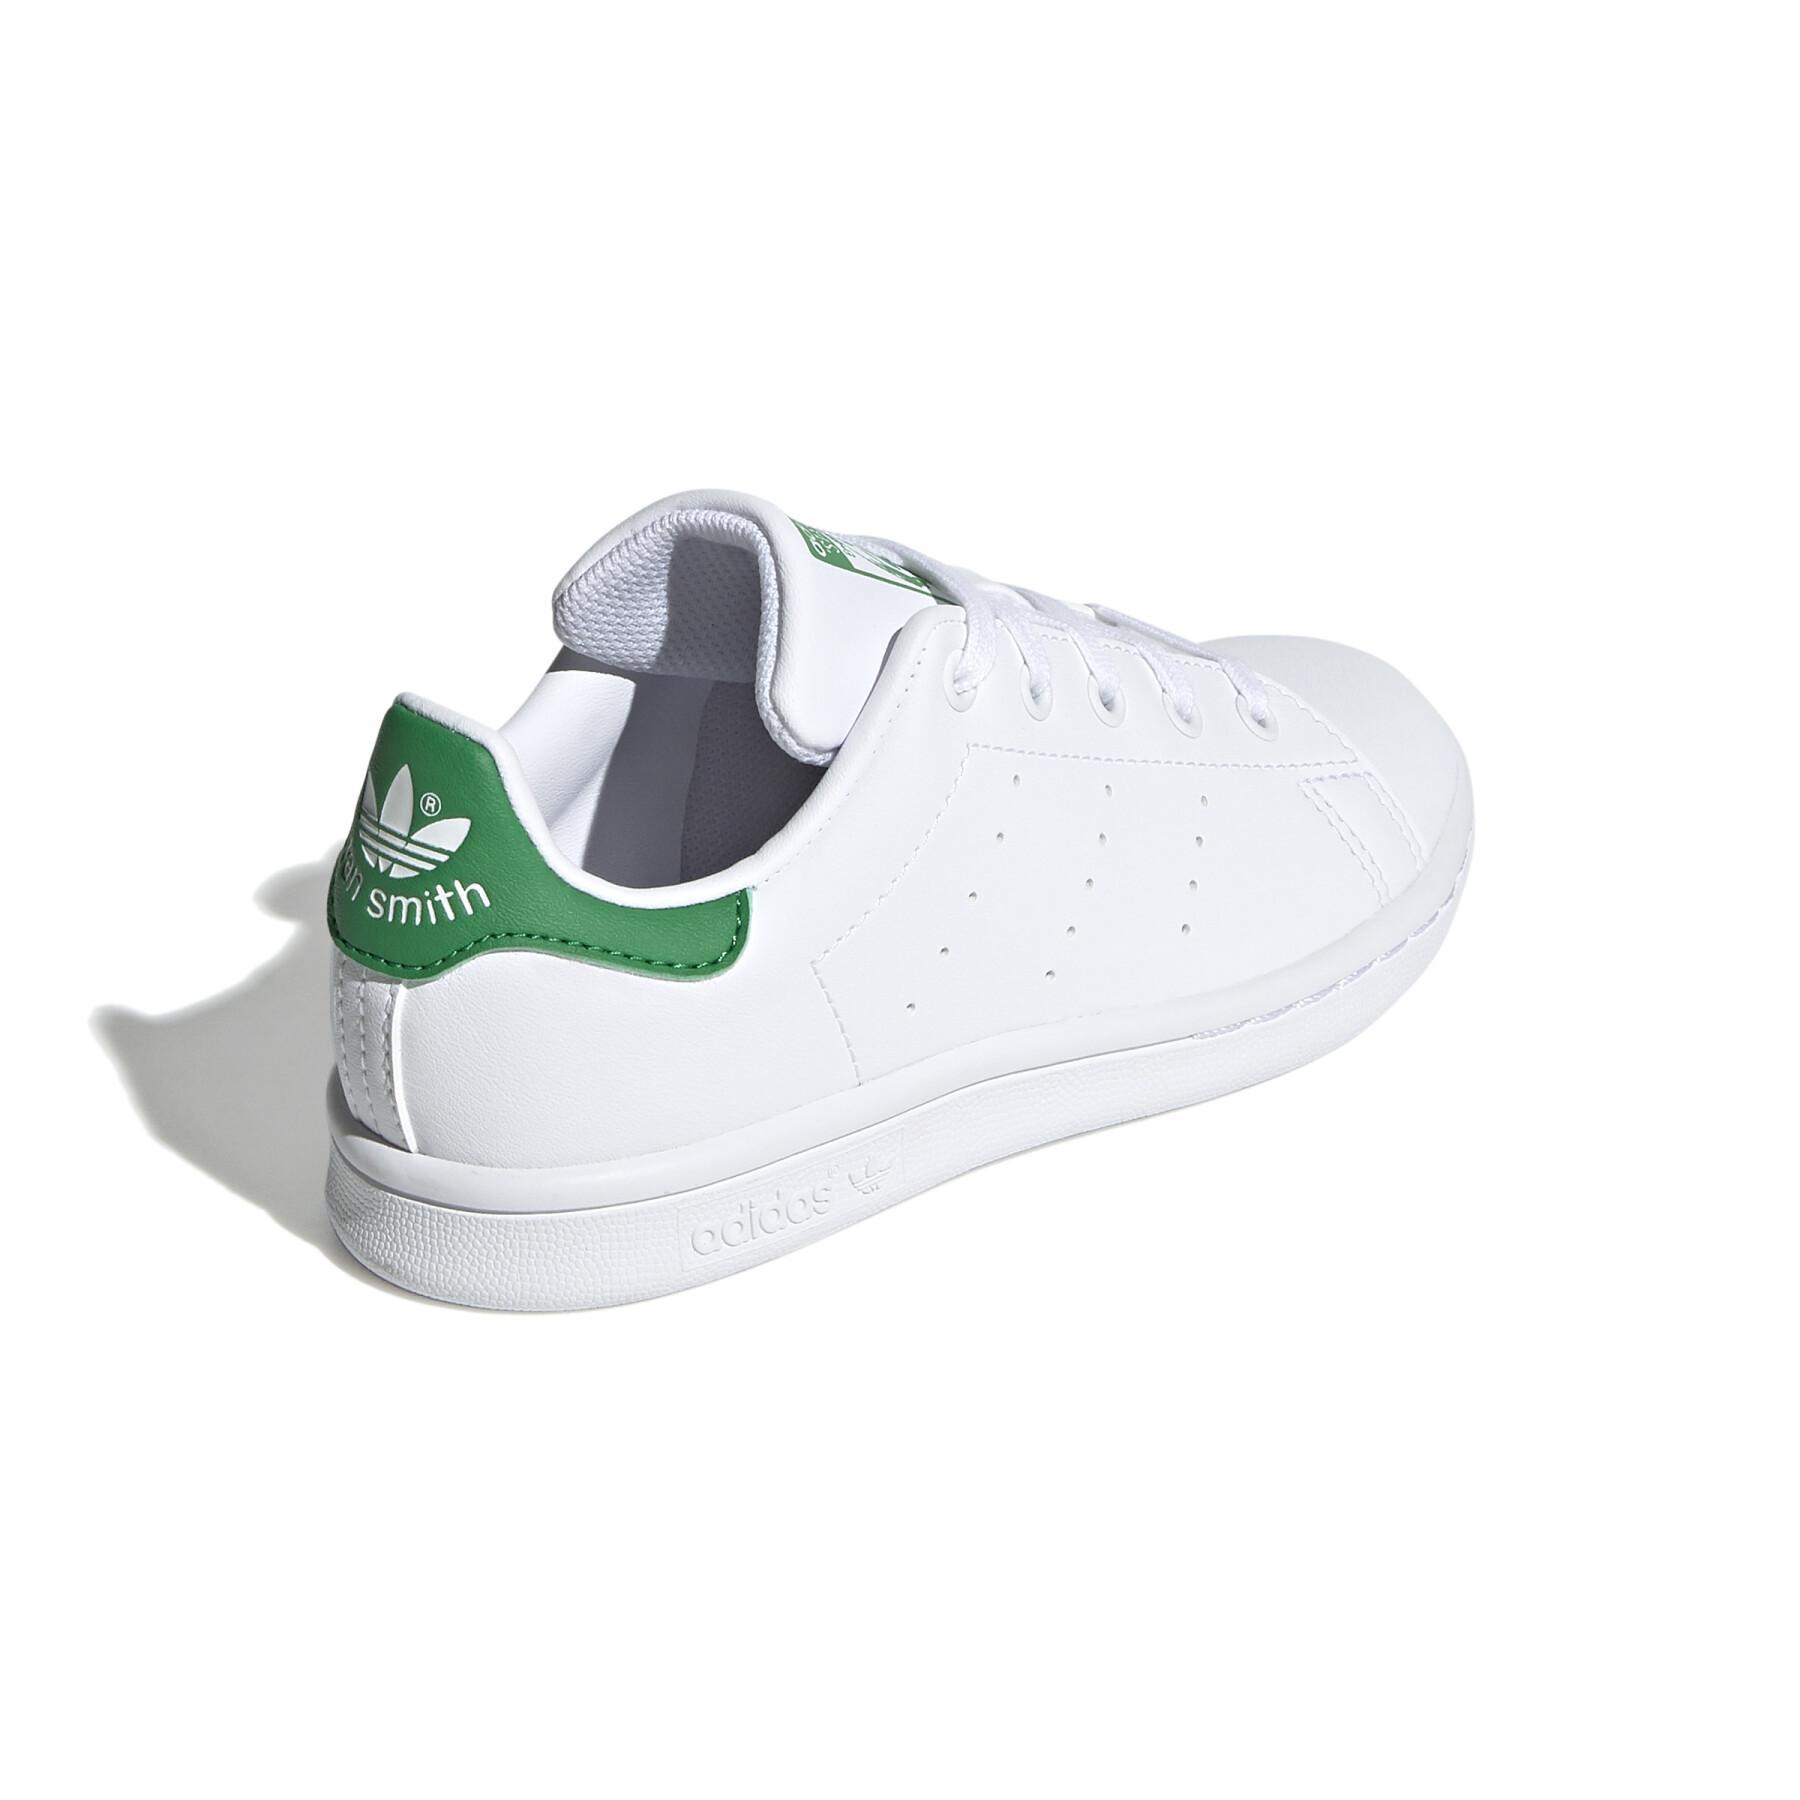 Children's sneakers adidas Originals Stan Smith C